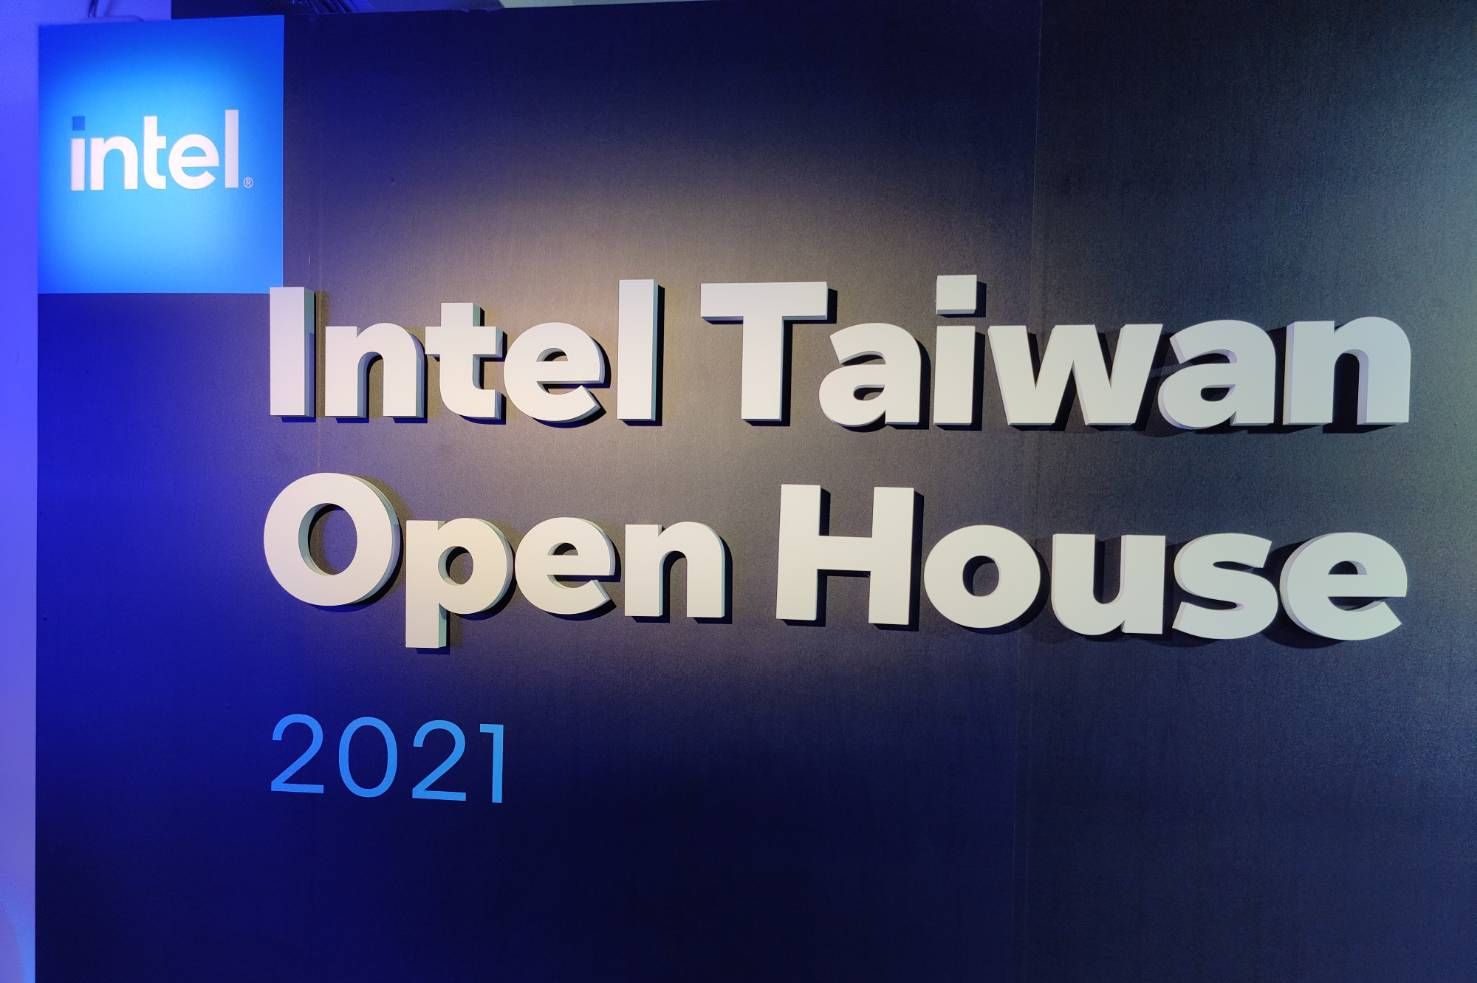 Intel Taiwan Open Hosue